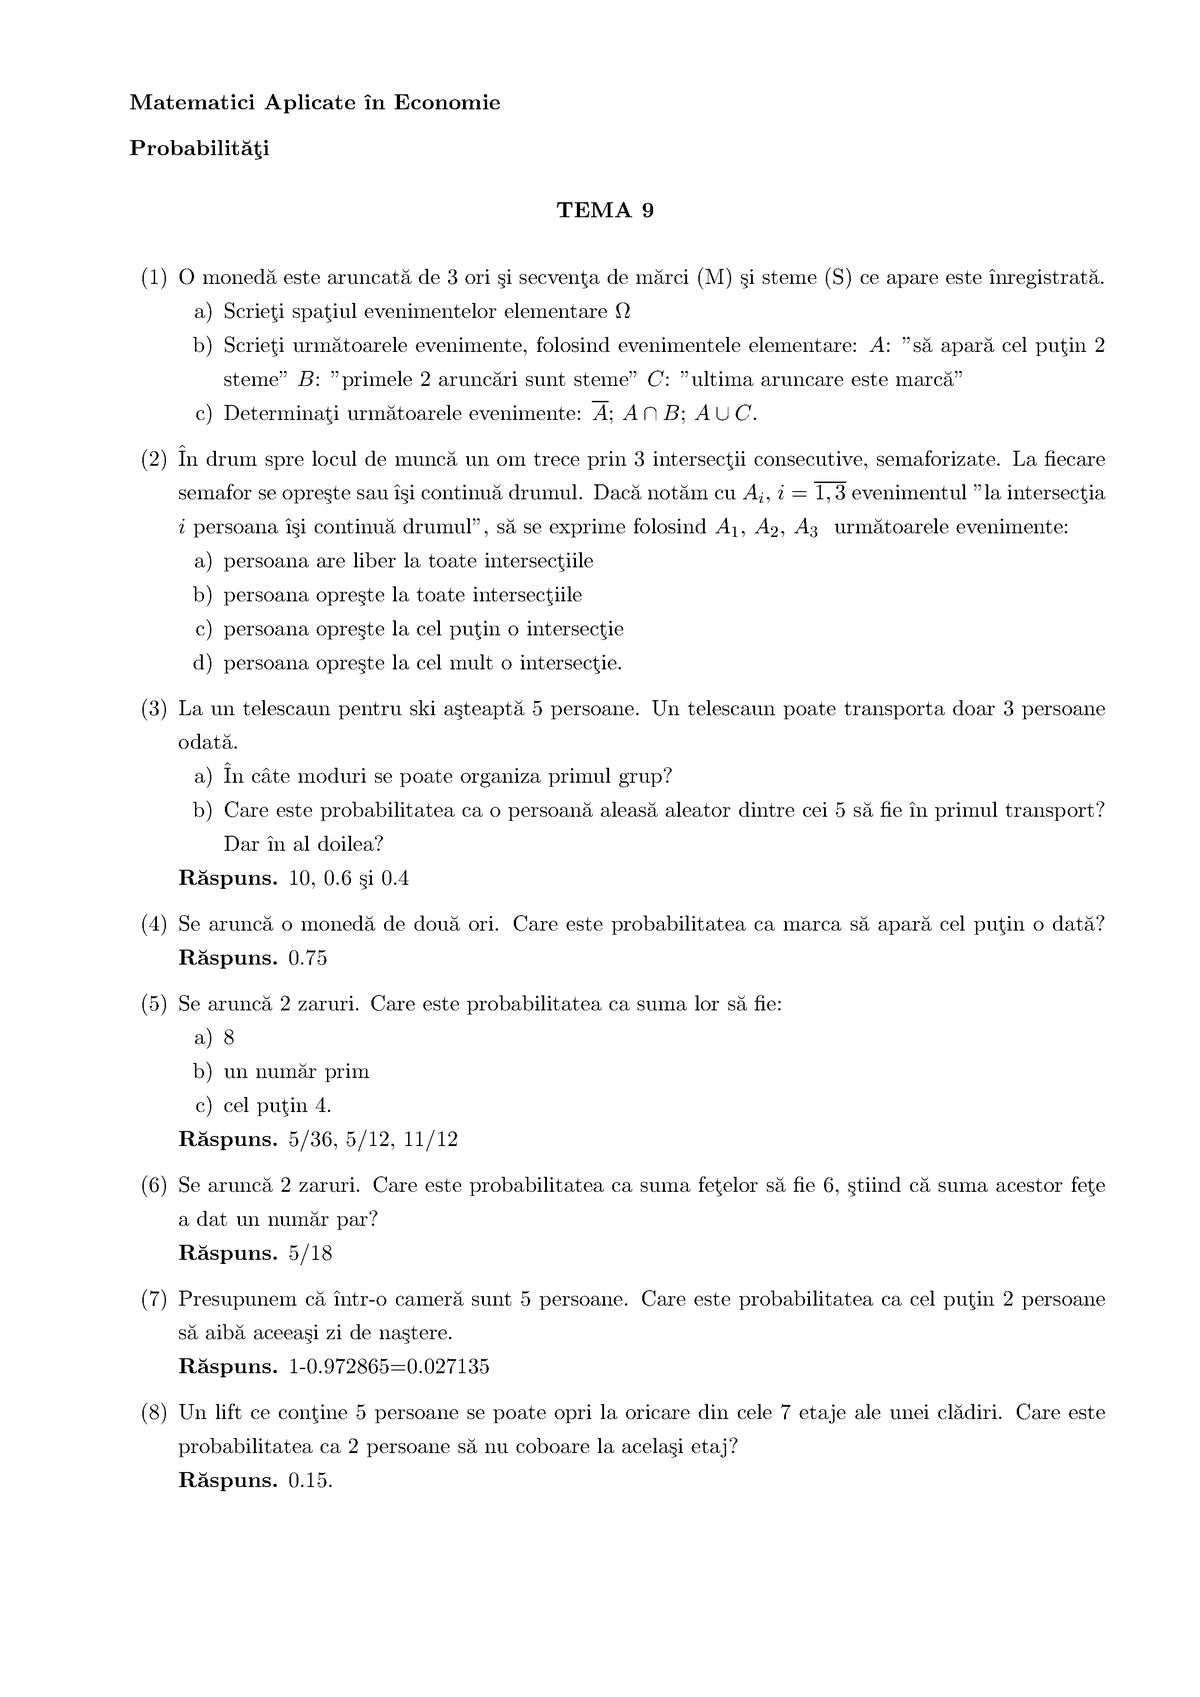 light bulb courtesy How? TEMA09-probabilitati - Matematici Aplicate ˆın Economie Probabilit˘ a¸ti  TEMA 9 (1) O moned˘ a este - StuDocu